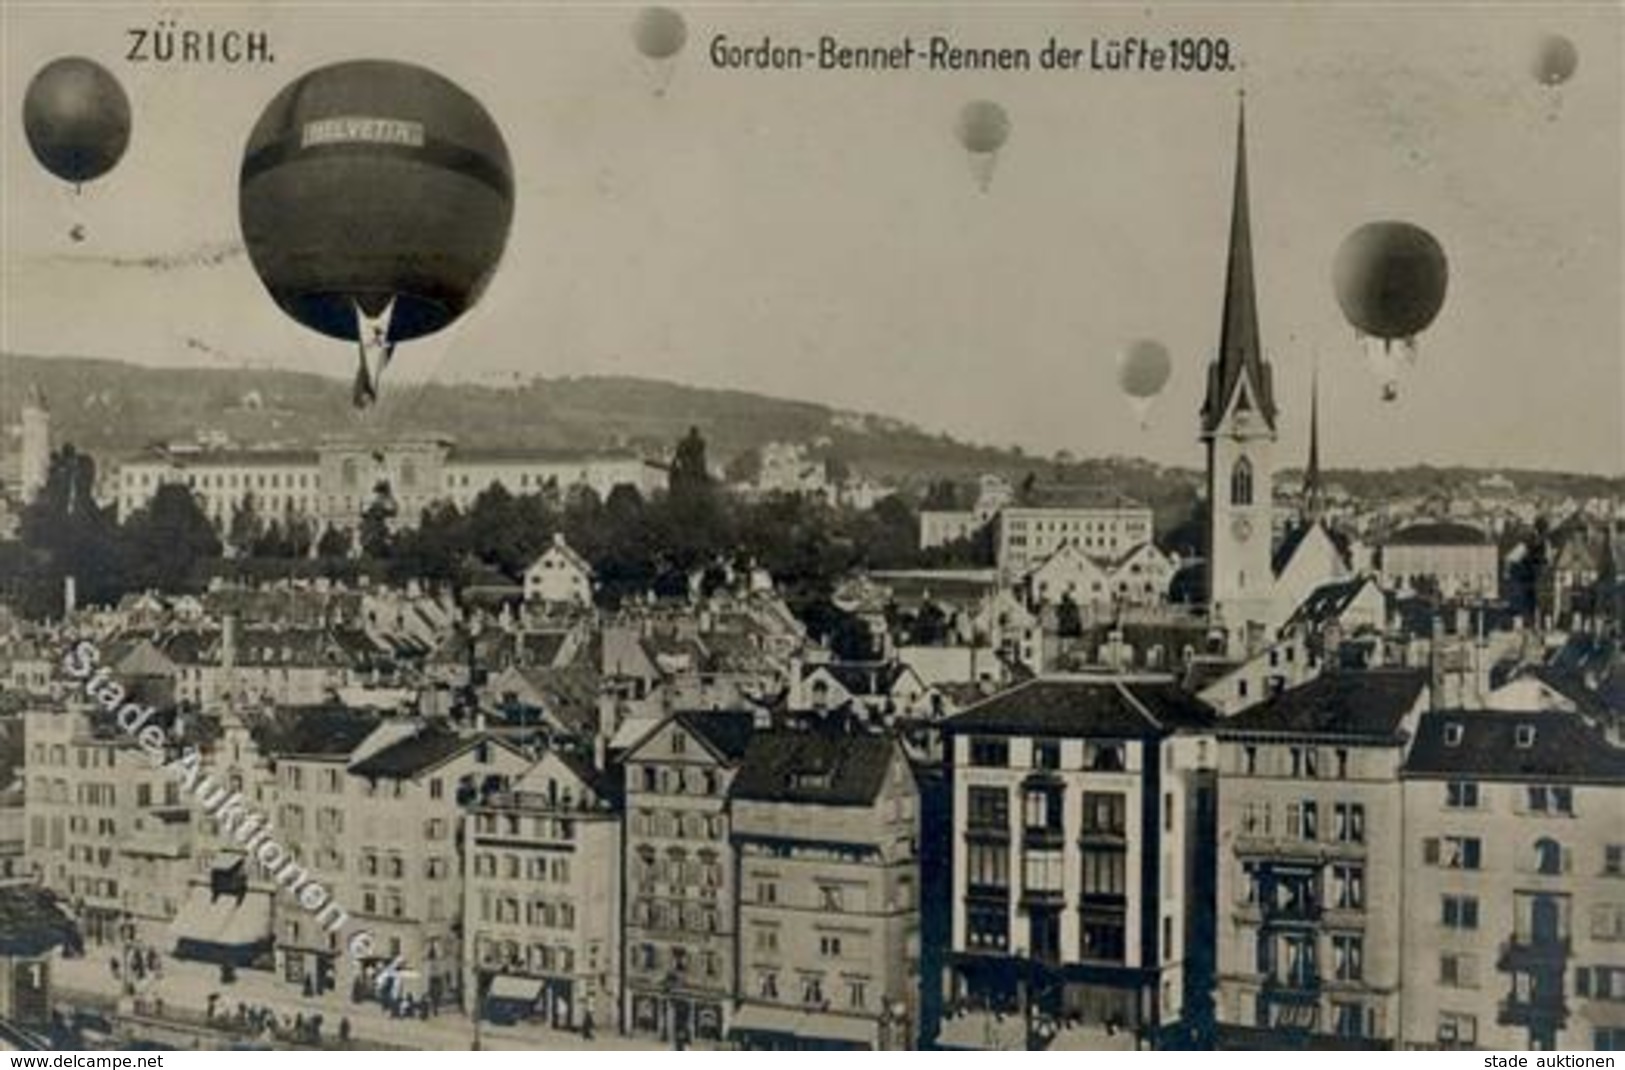 Ballon Gordon Bennett Wettfliegen Foto AK 1909 I-II - Fesselballons